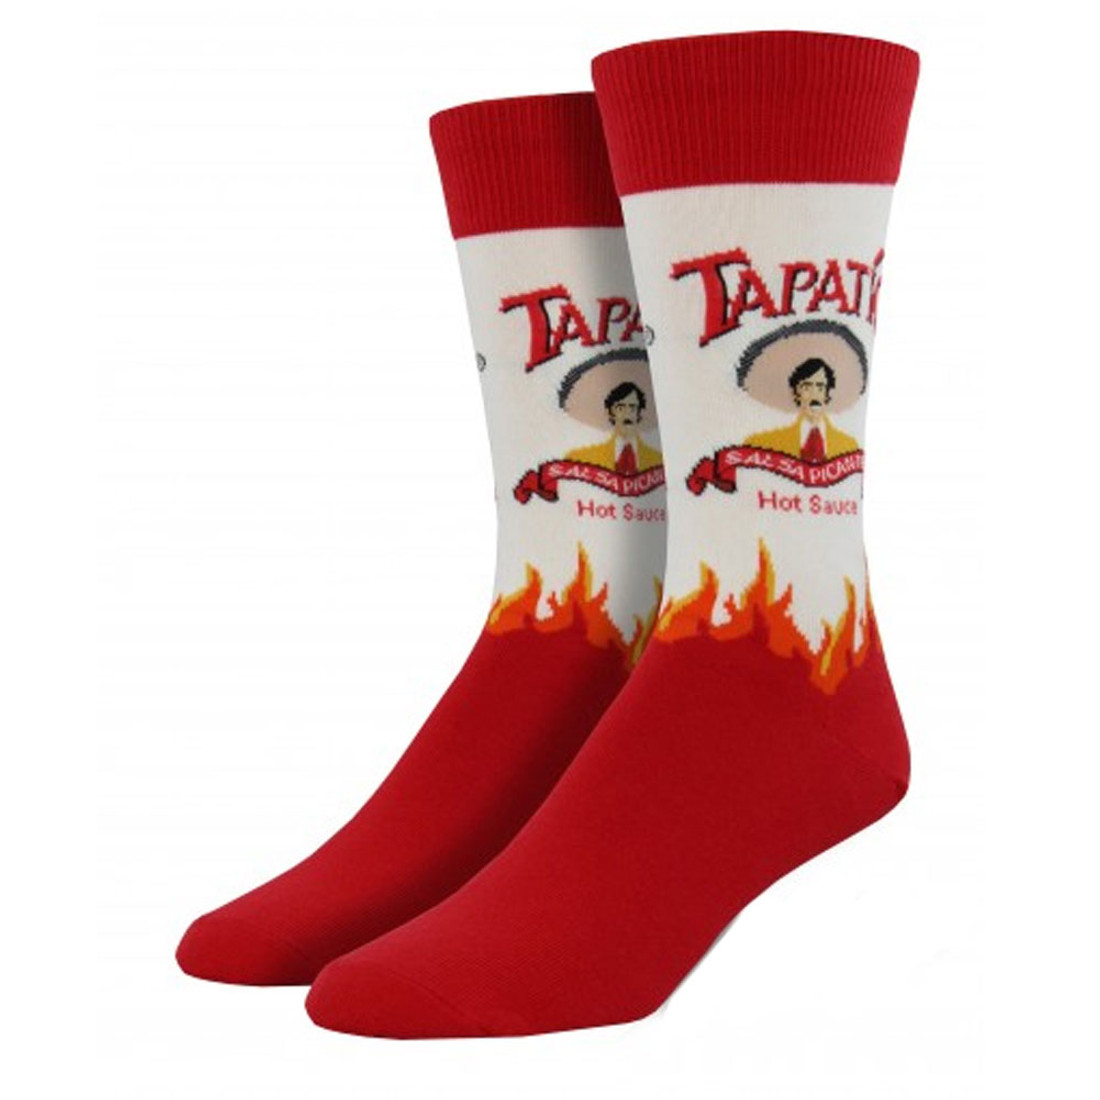 Men's Tapatio Hot Sauce Novelty Socks